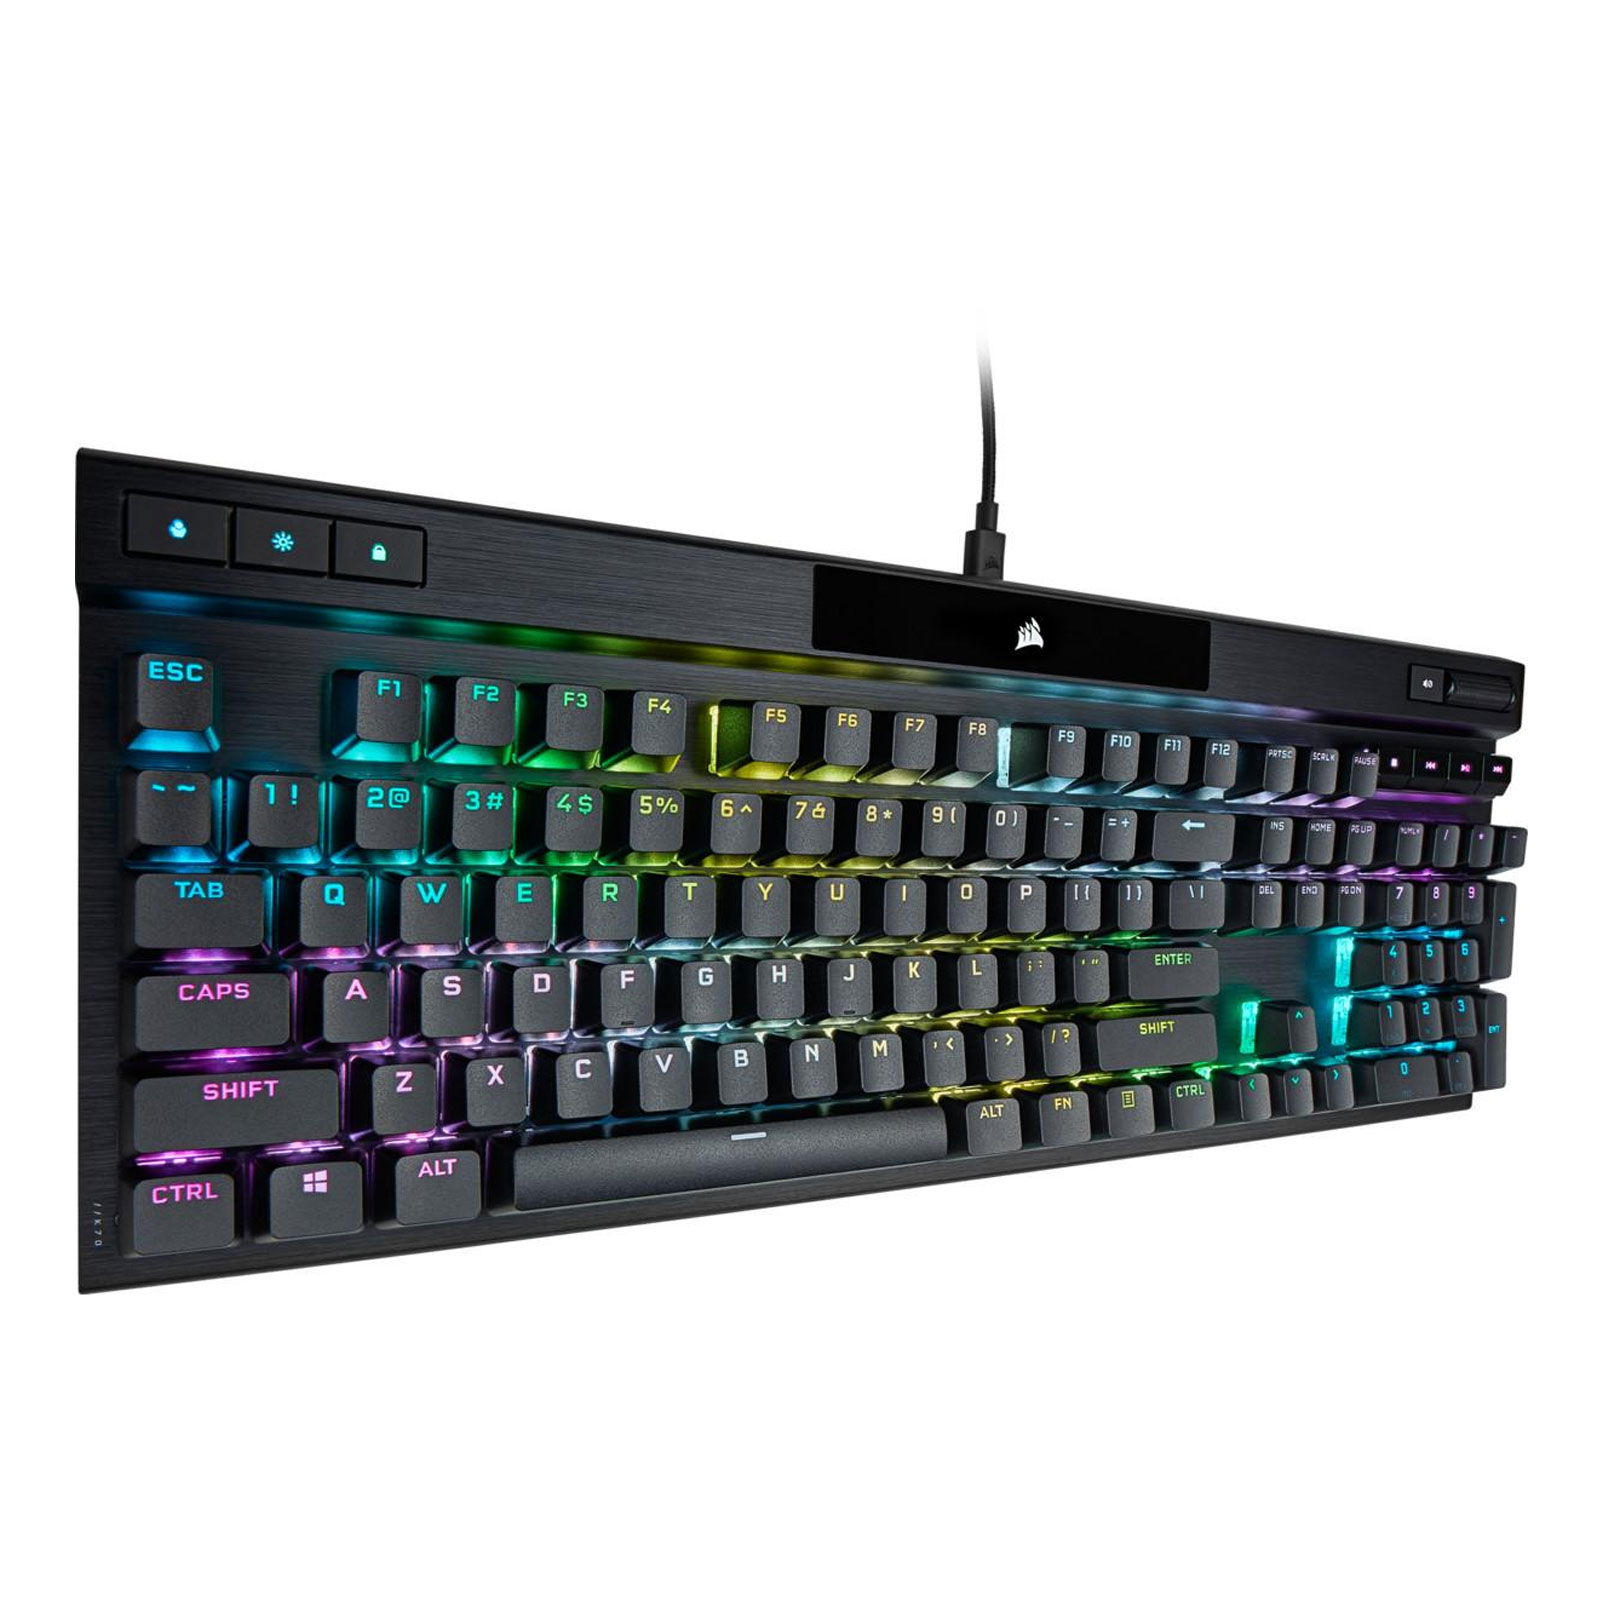 Corsair K70 PRO RGB Optical-Mechanical Gaming Keyboard Black